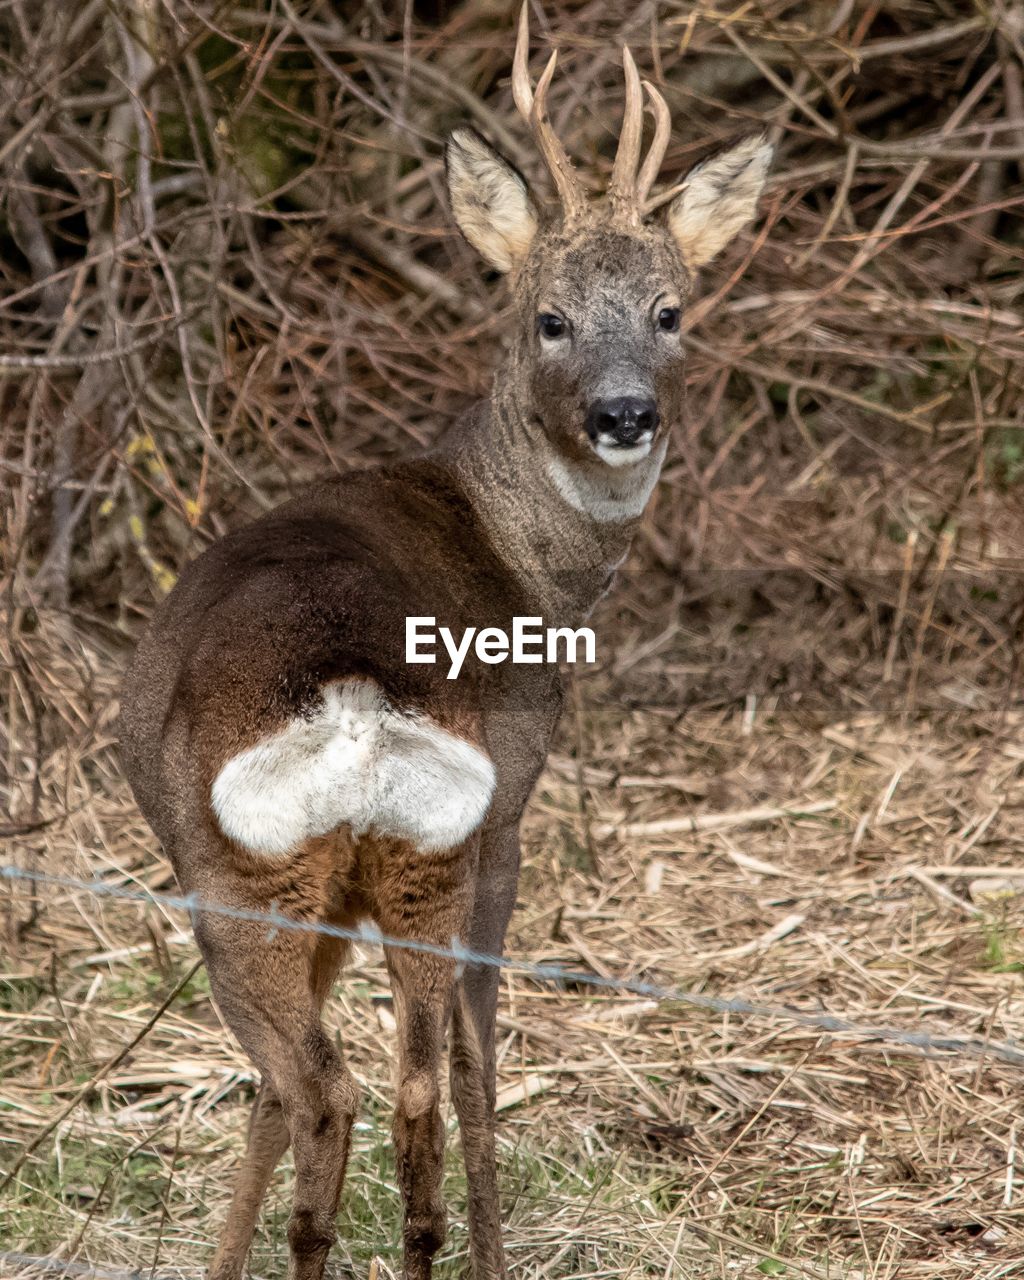 Male roe deer